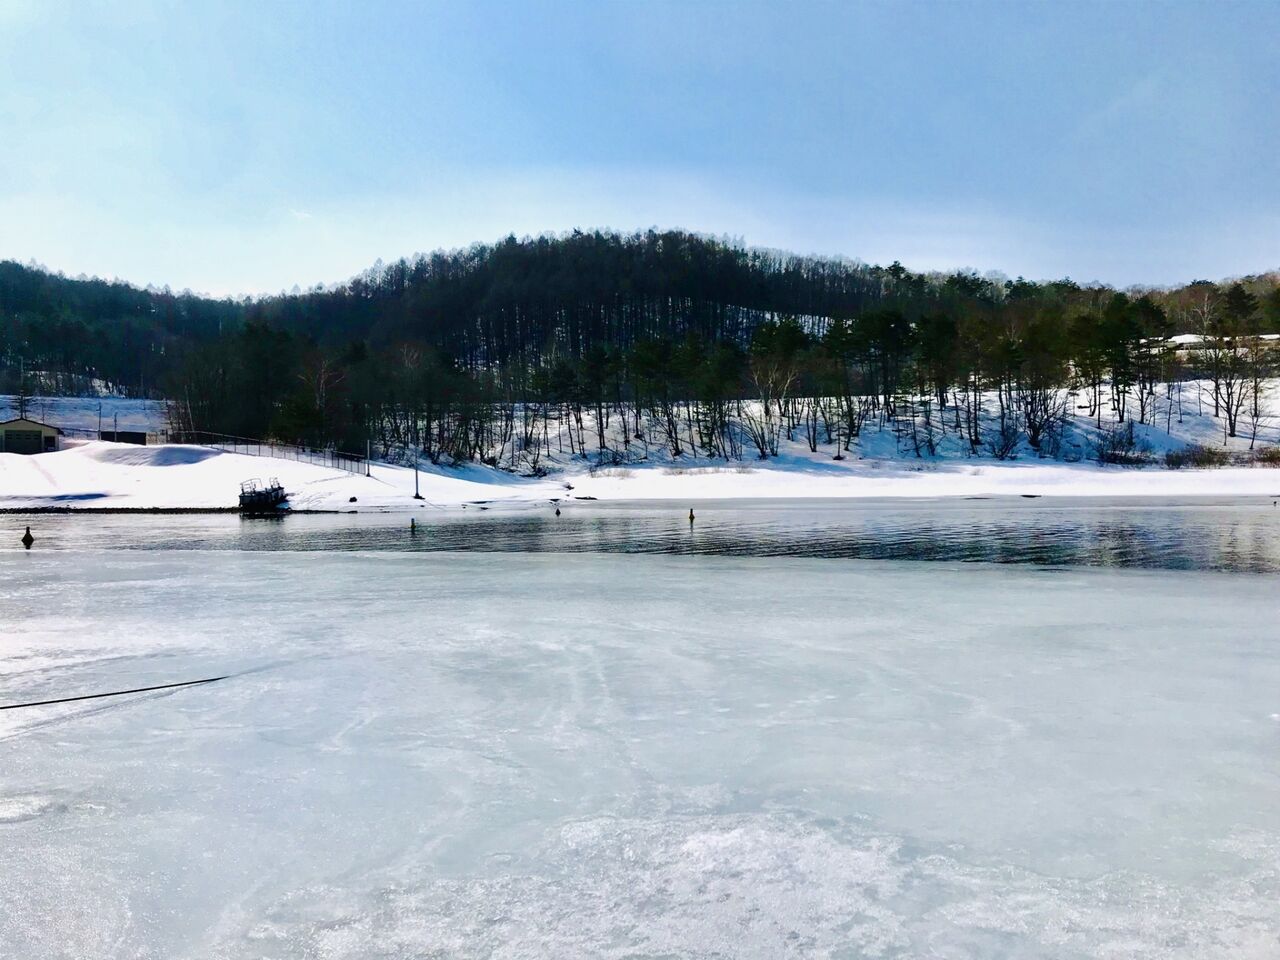 【釣り】岩手・菜魚湖のワカサギ釣り、暖冬の影響で初の中止…氷の厚さ基準に満たず